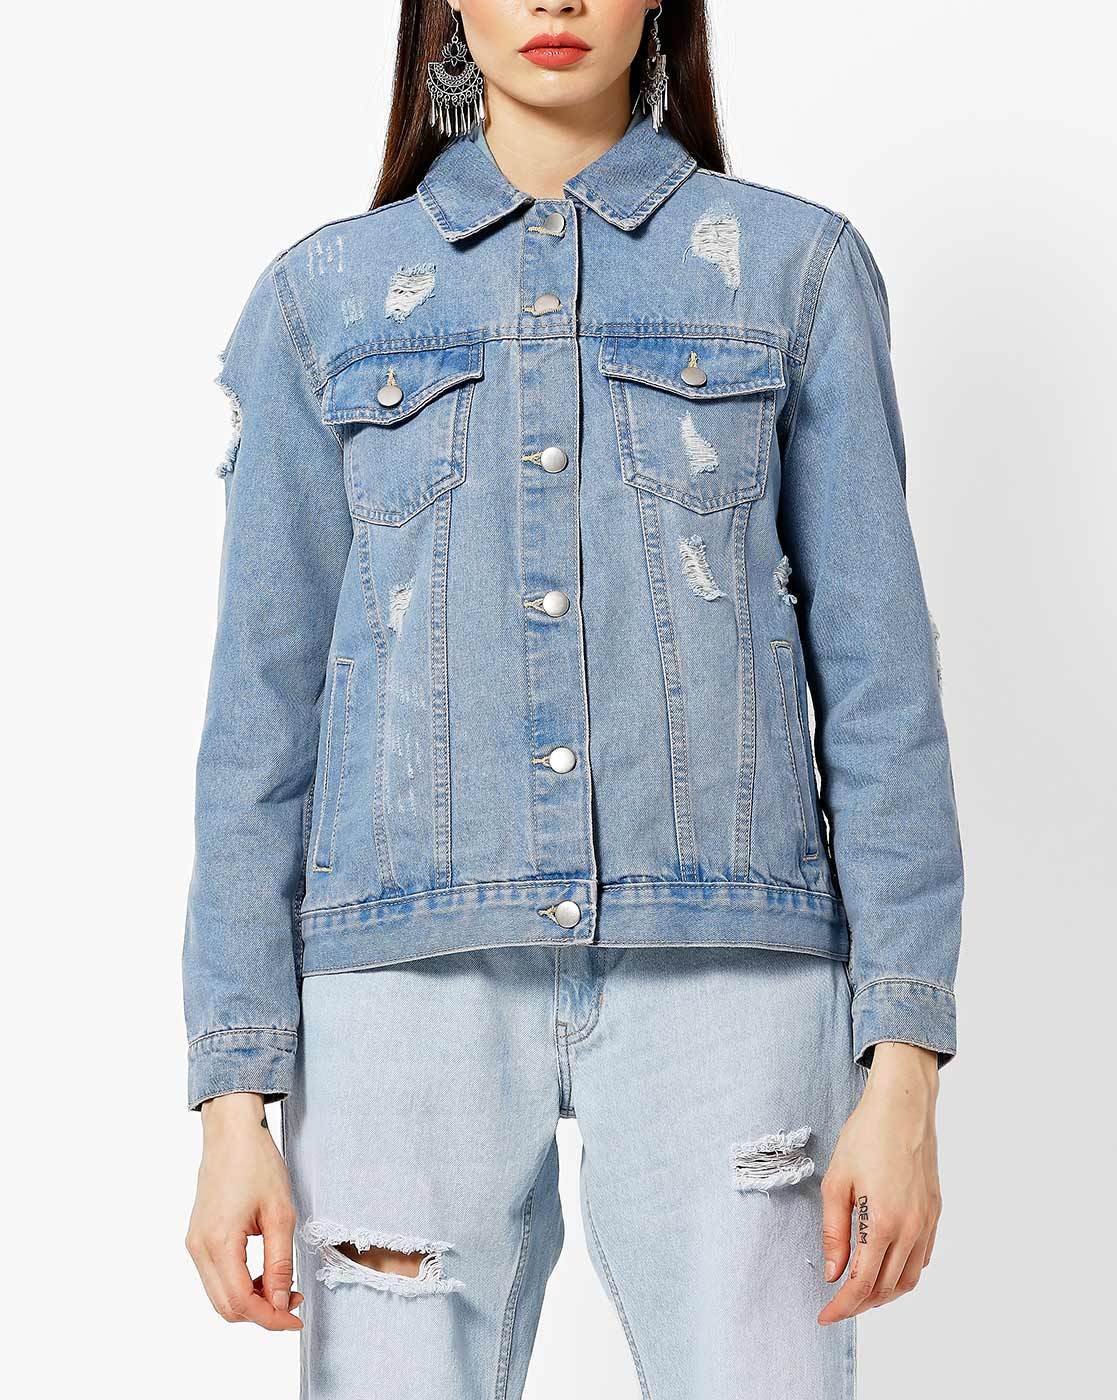 Buy Blue Jackets  Coats for Women by DNMX Online  Ajiocom